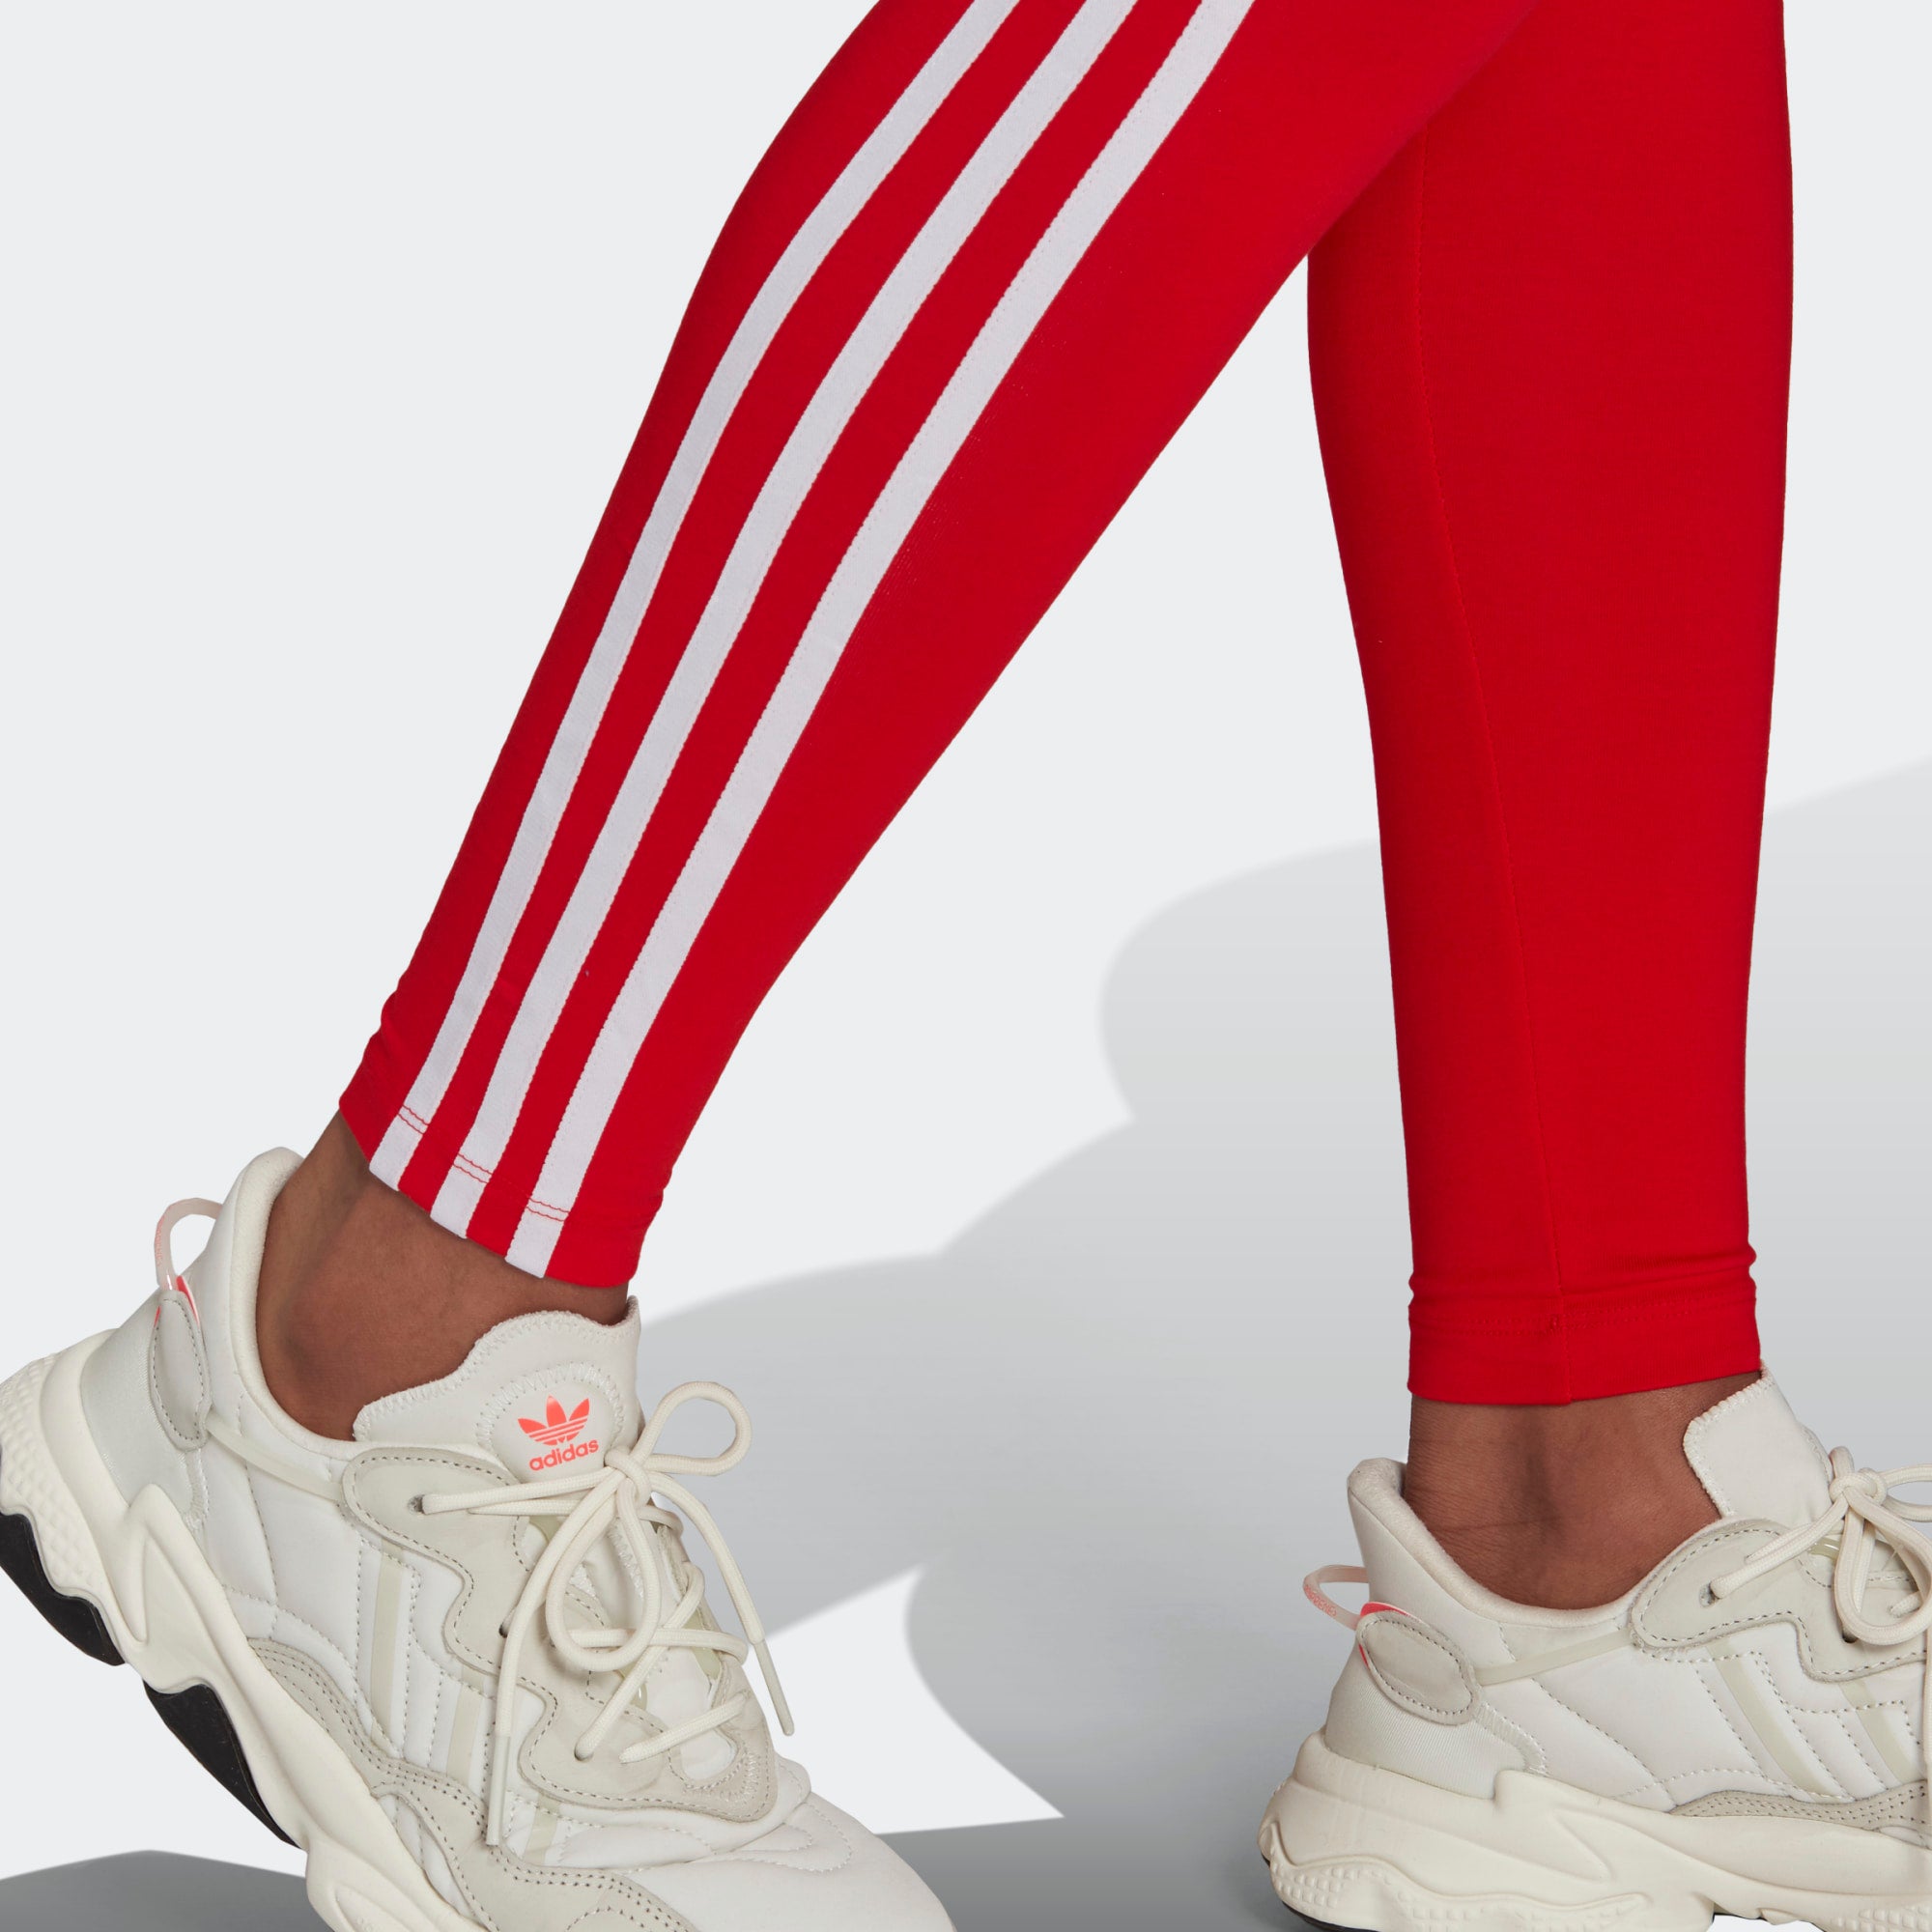 ADIDAS ORIGINALS Skinny Leggings 'Adicolor Classics 3-Stripes' in Red